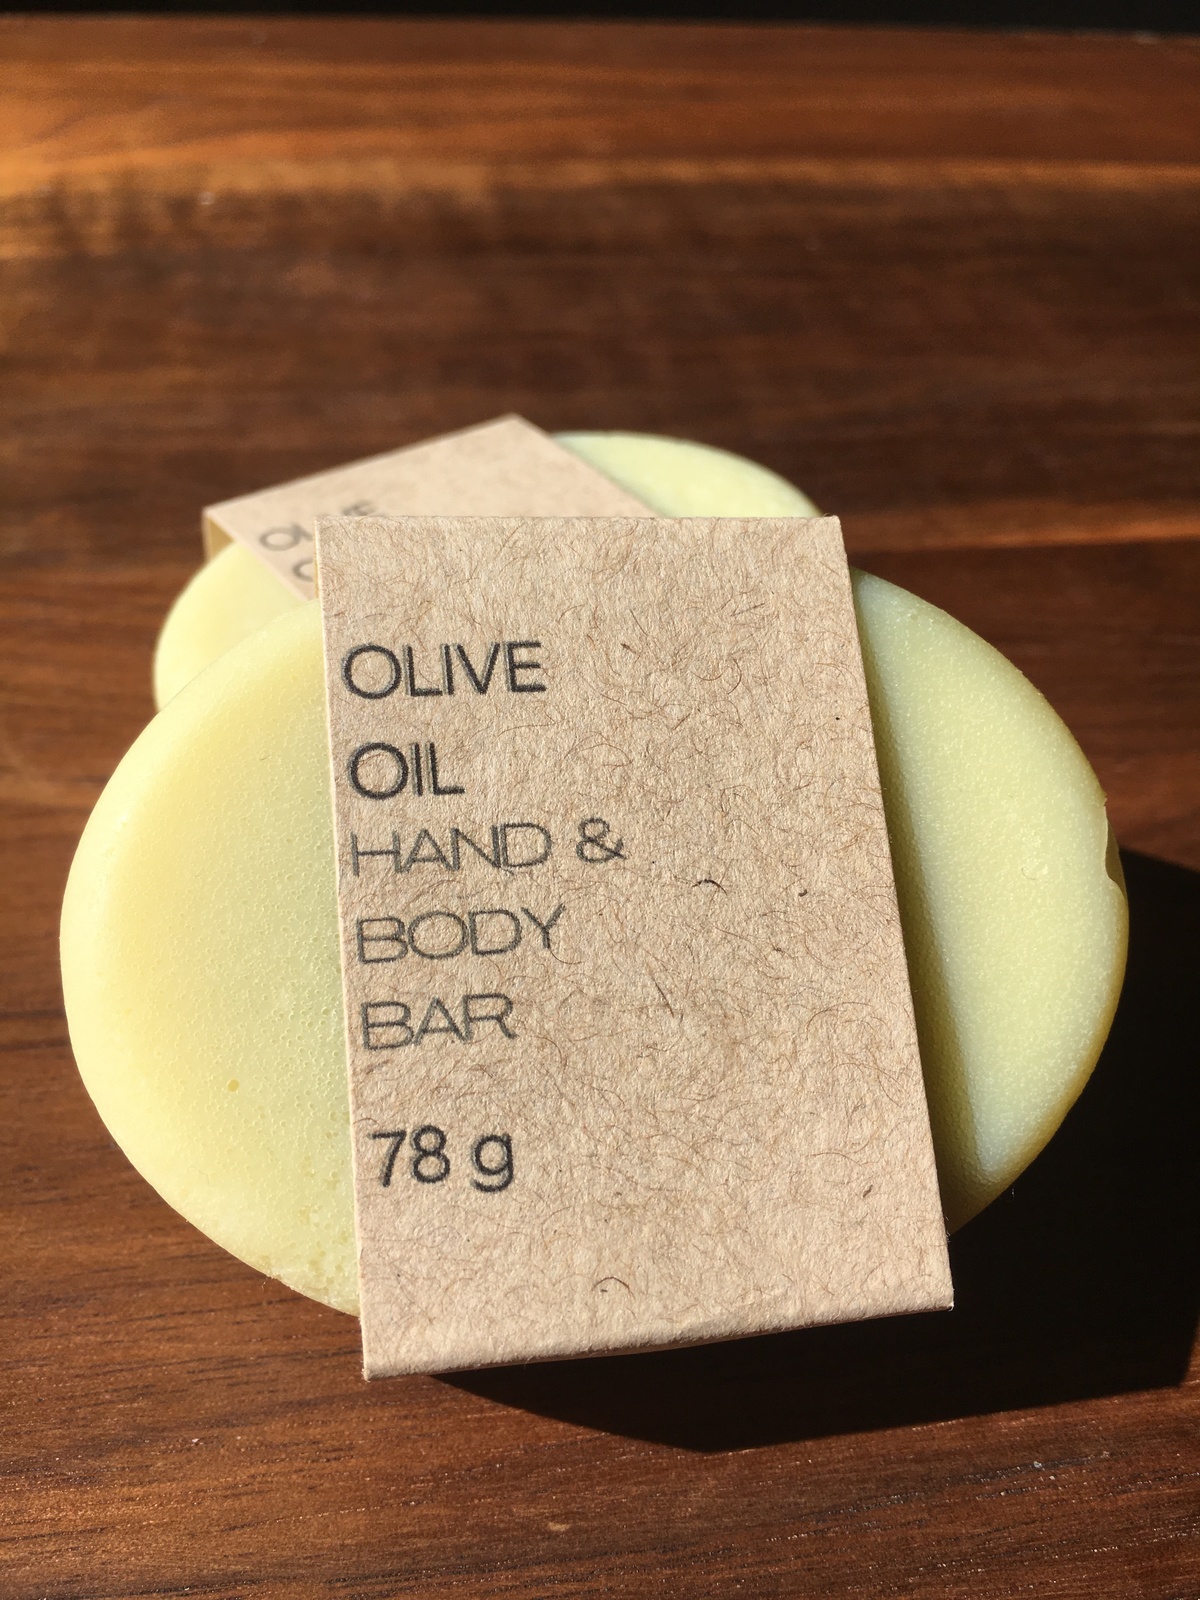 Olive Oil Hand & Body Bar - 78g / 2.7 oz - Homemade Soap